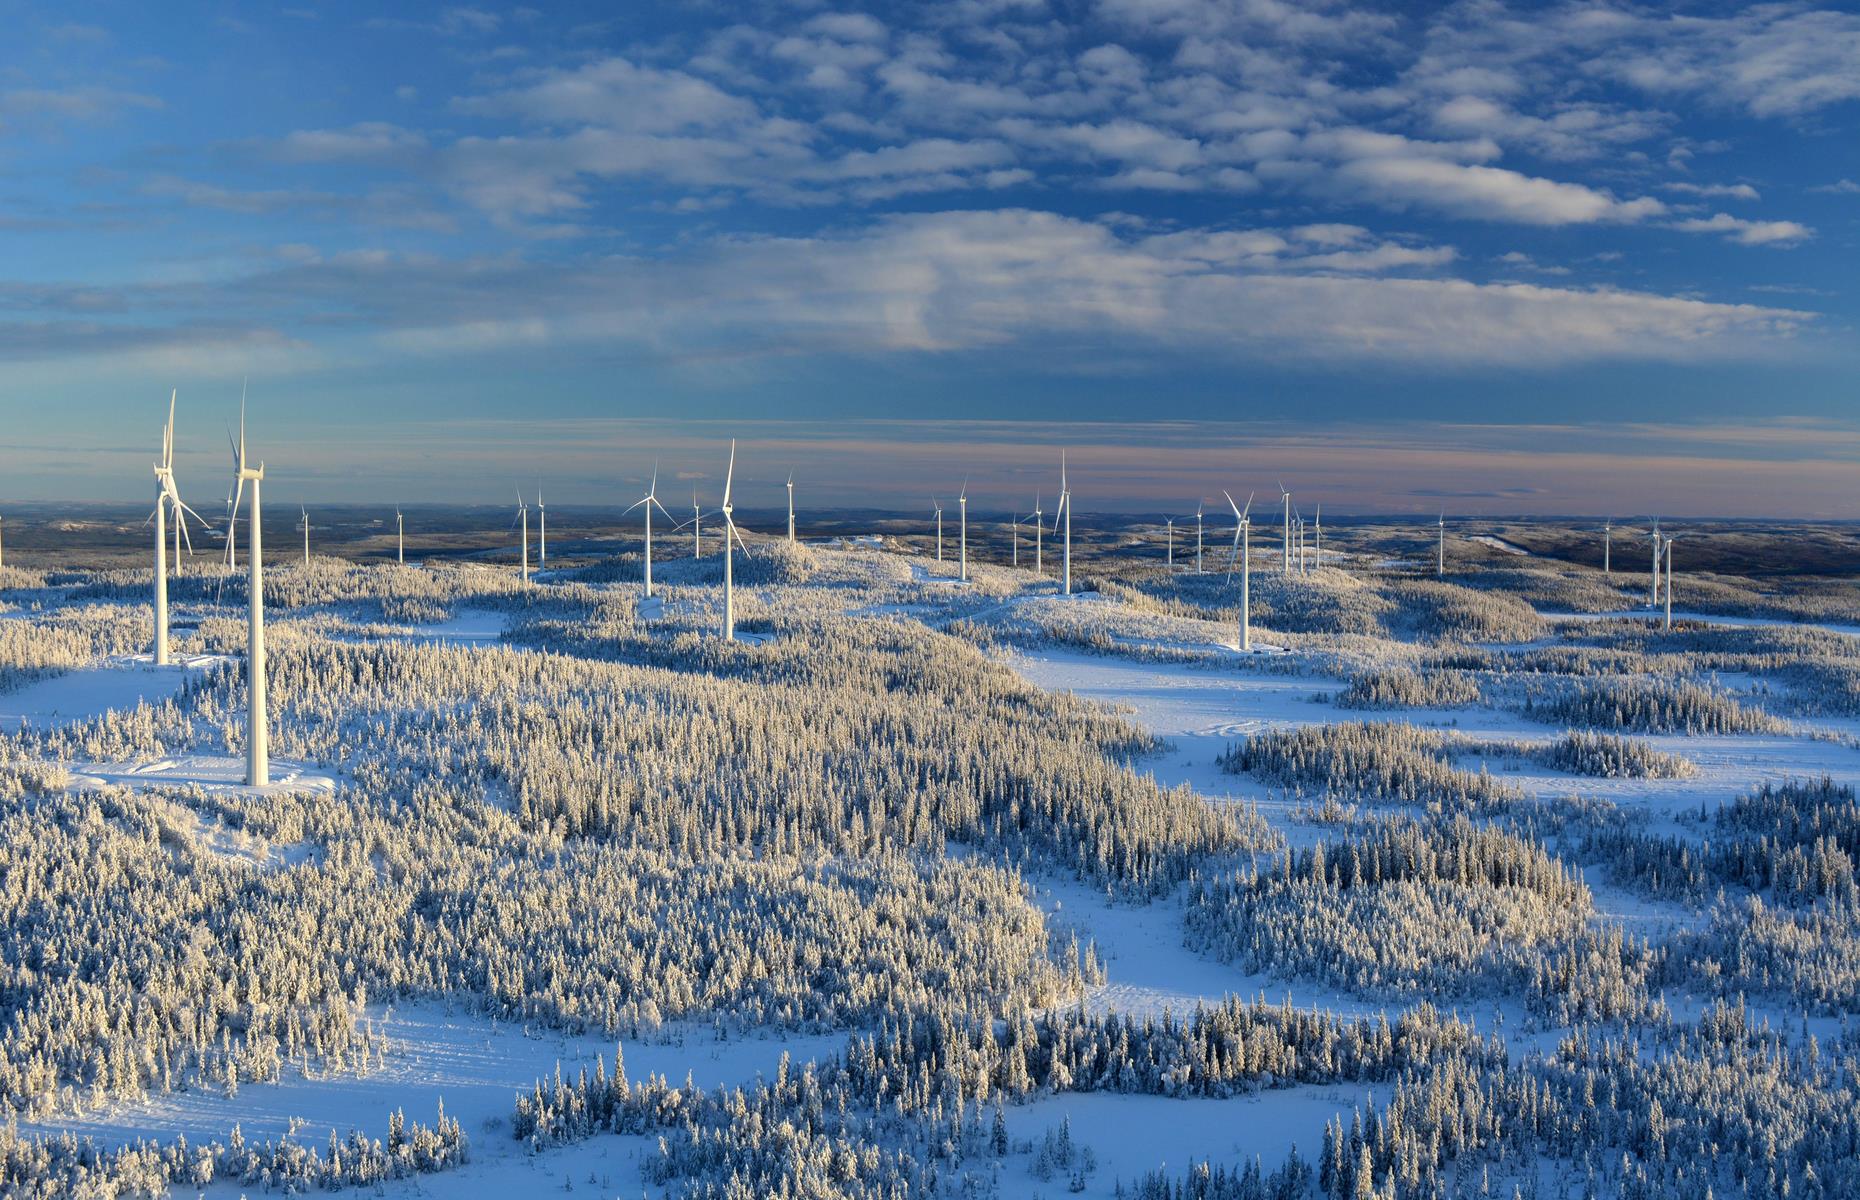 Sweden: 53.31% renewables